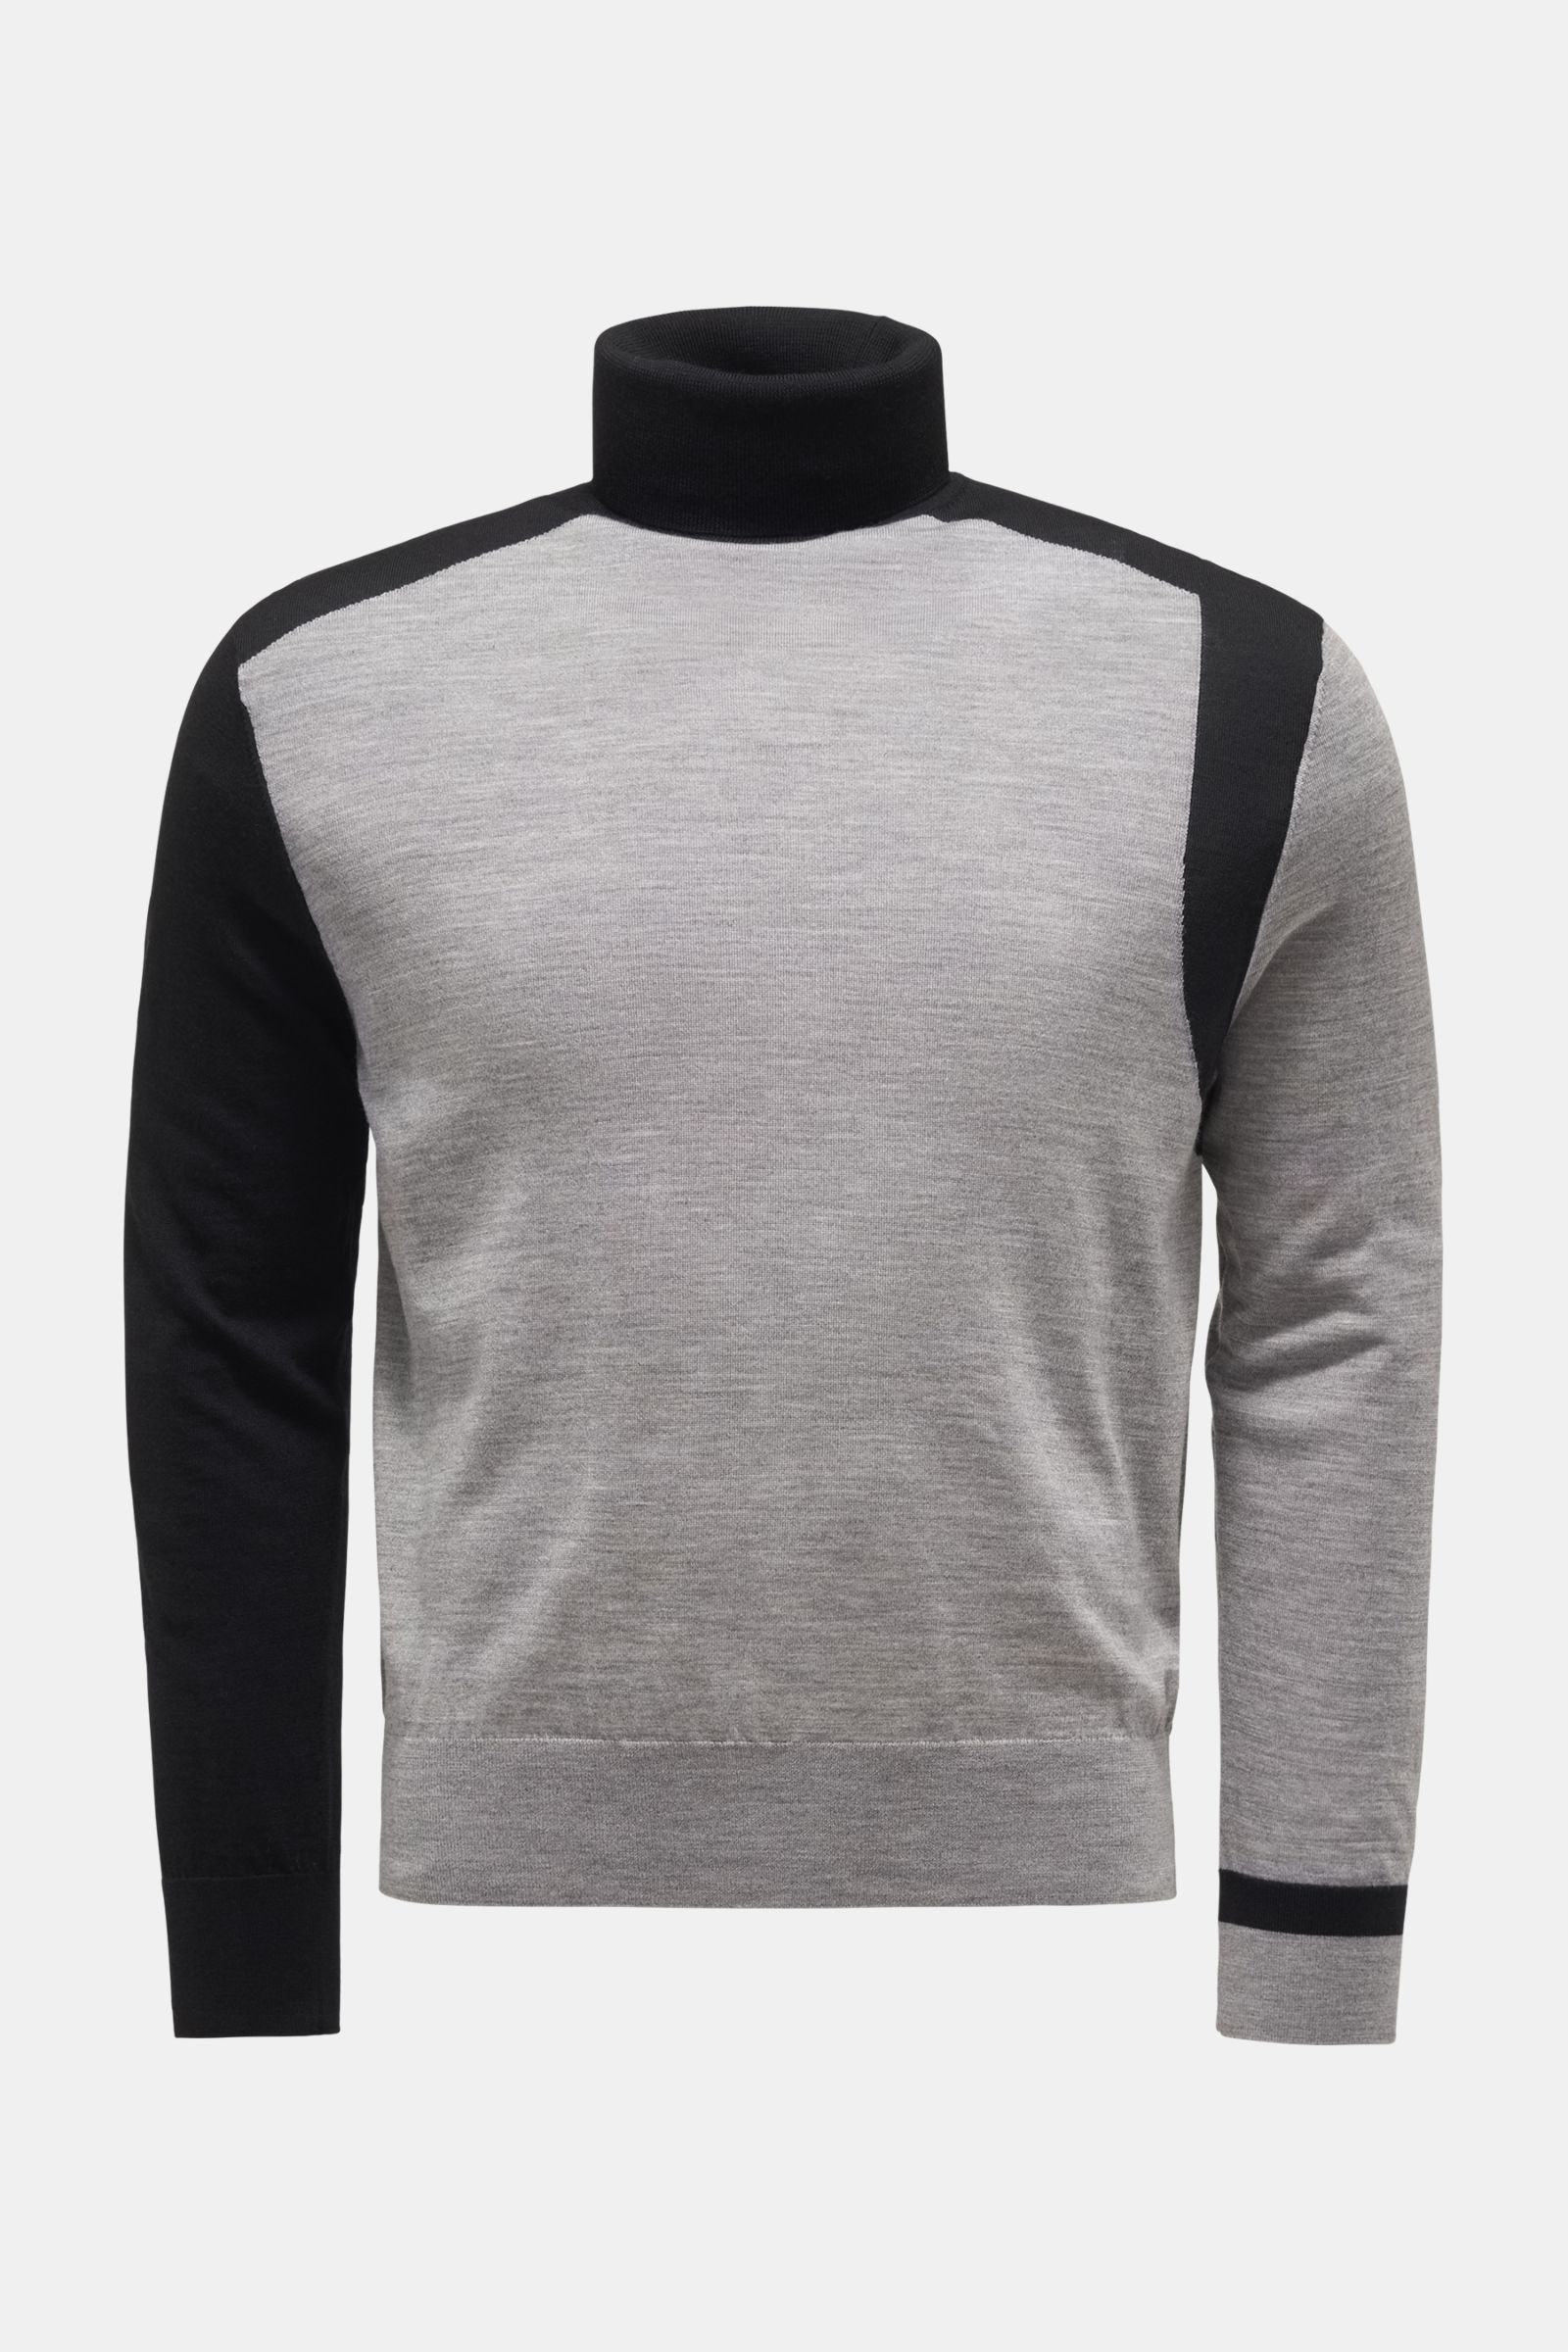 Fine knit turtleneck jumper grey/black